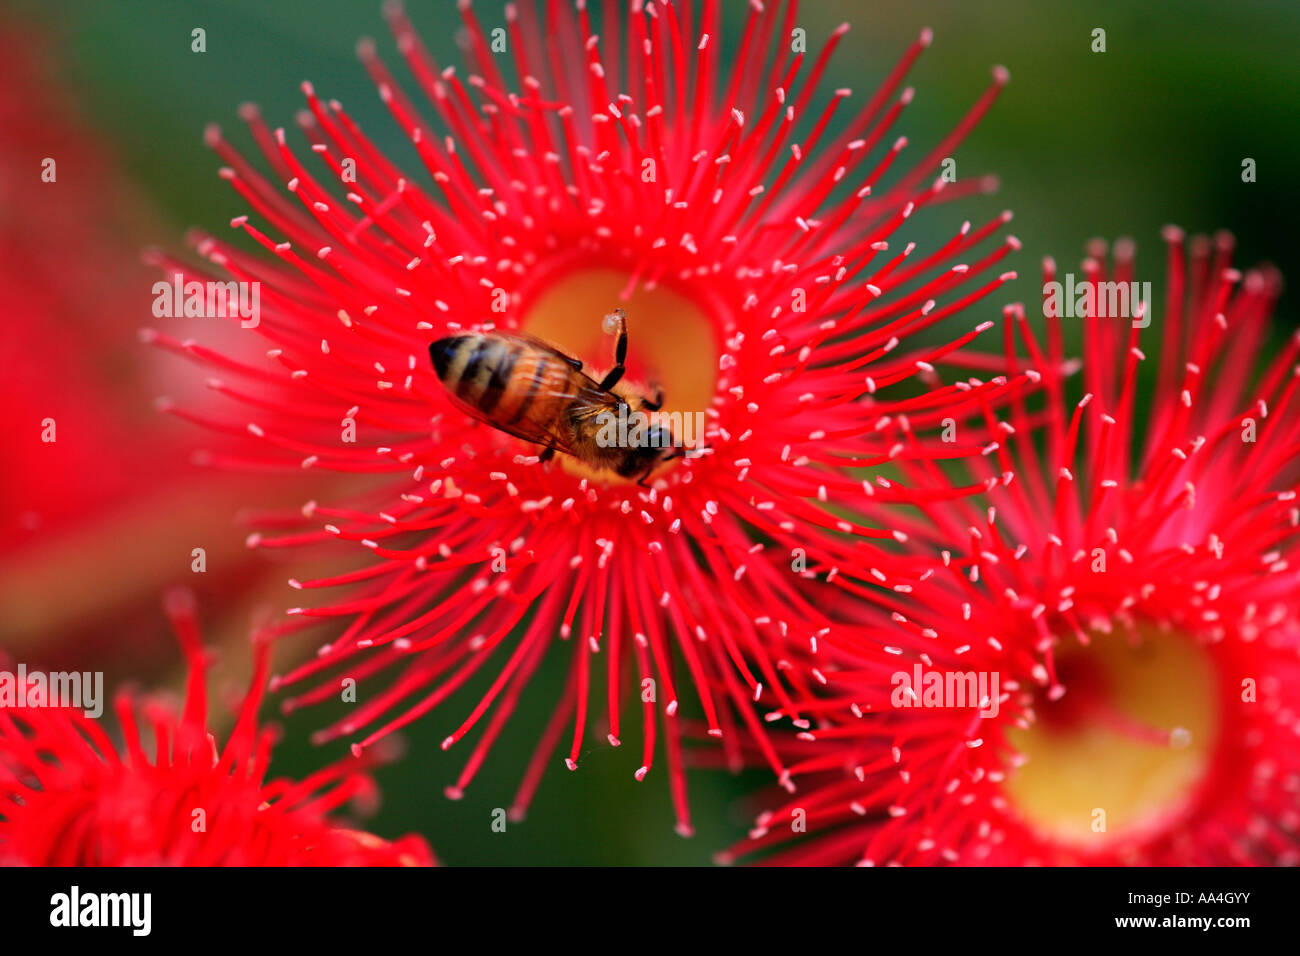 Une abeille européenne recueille le pollen d'une rose rouge gomme floraison Australie Banque D'Images